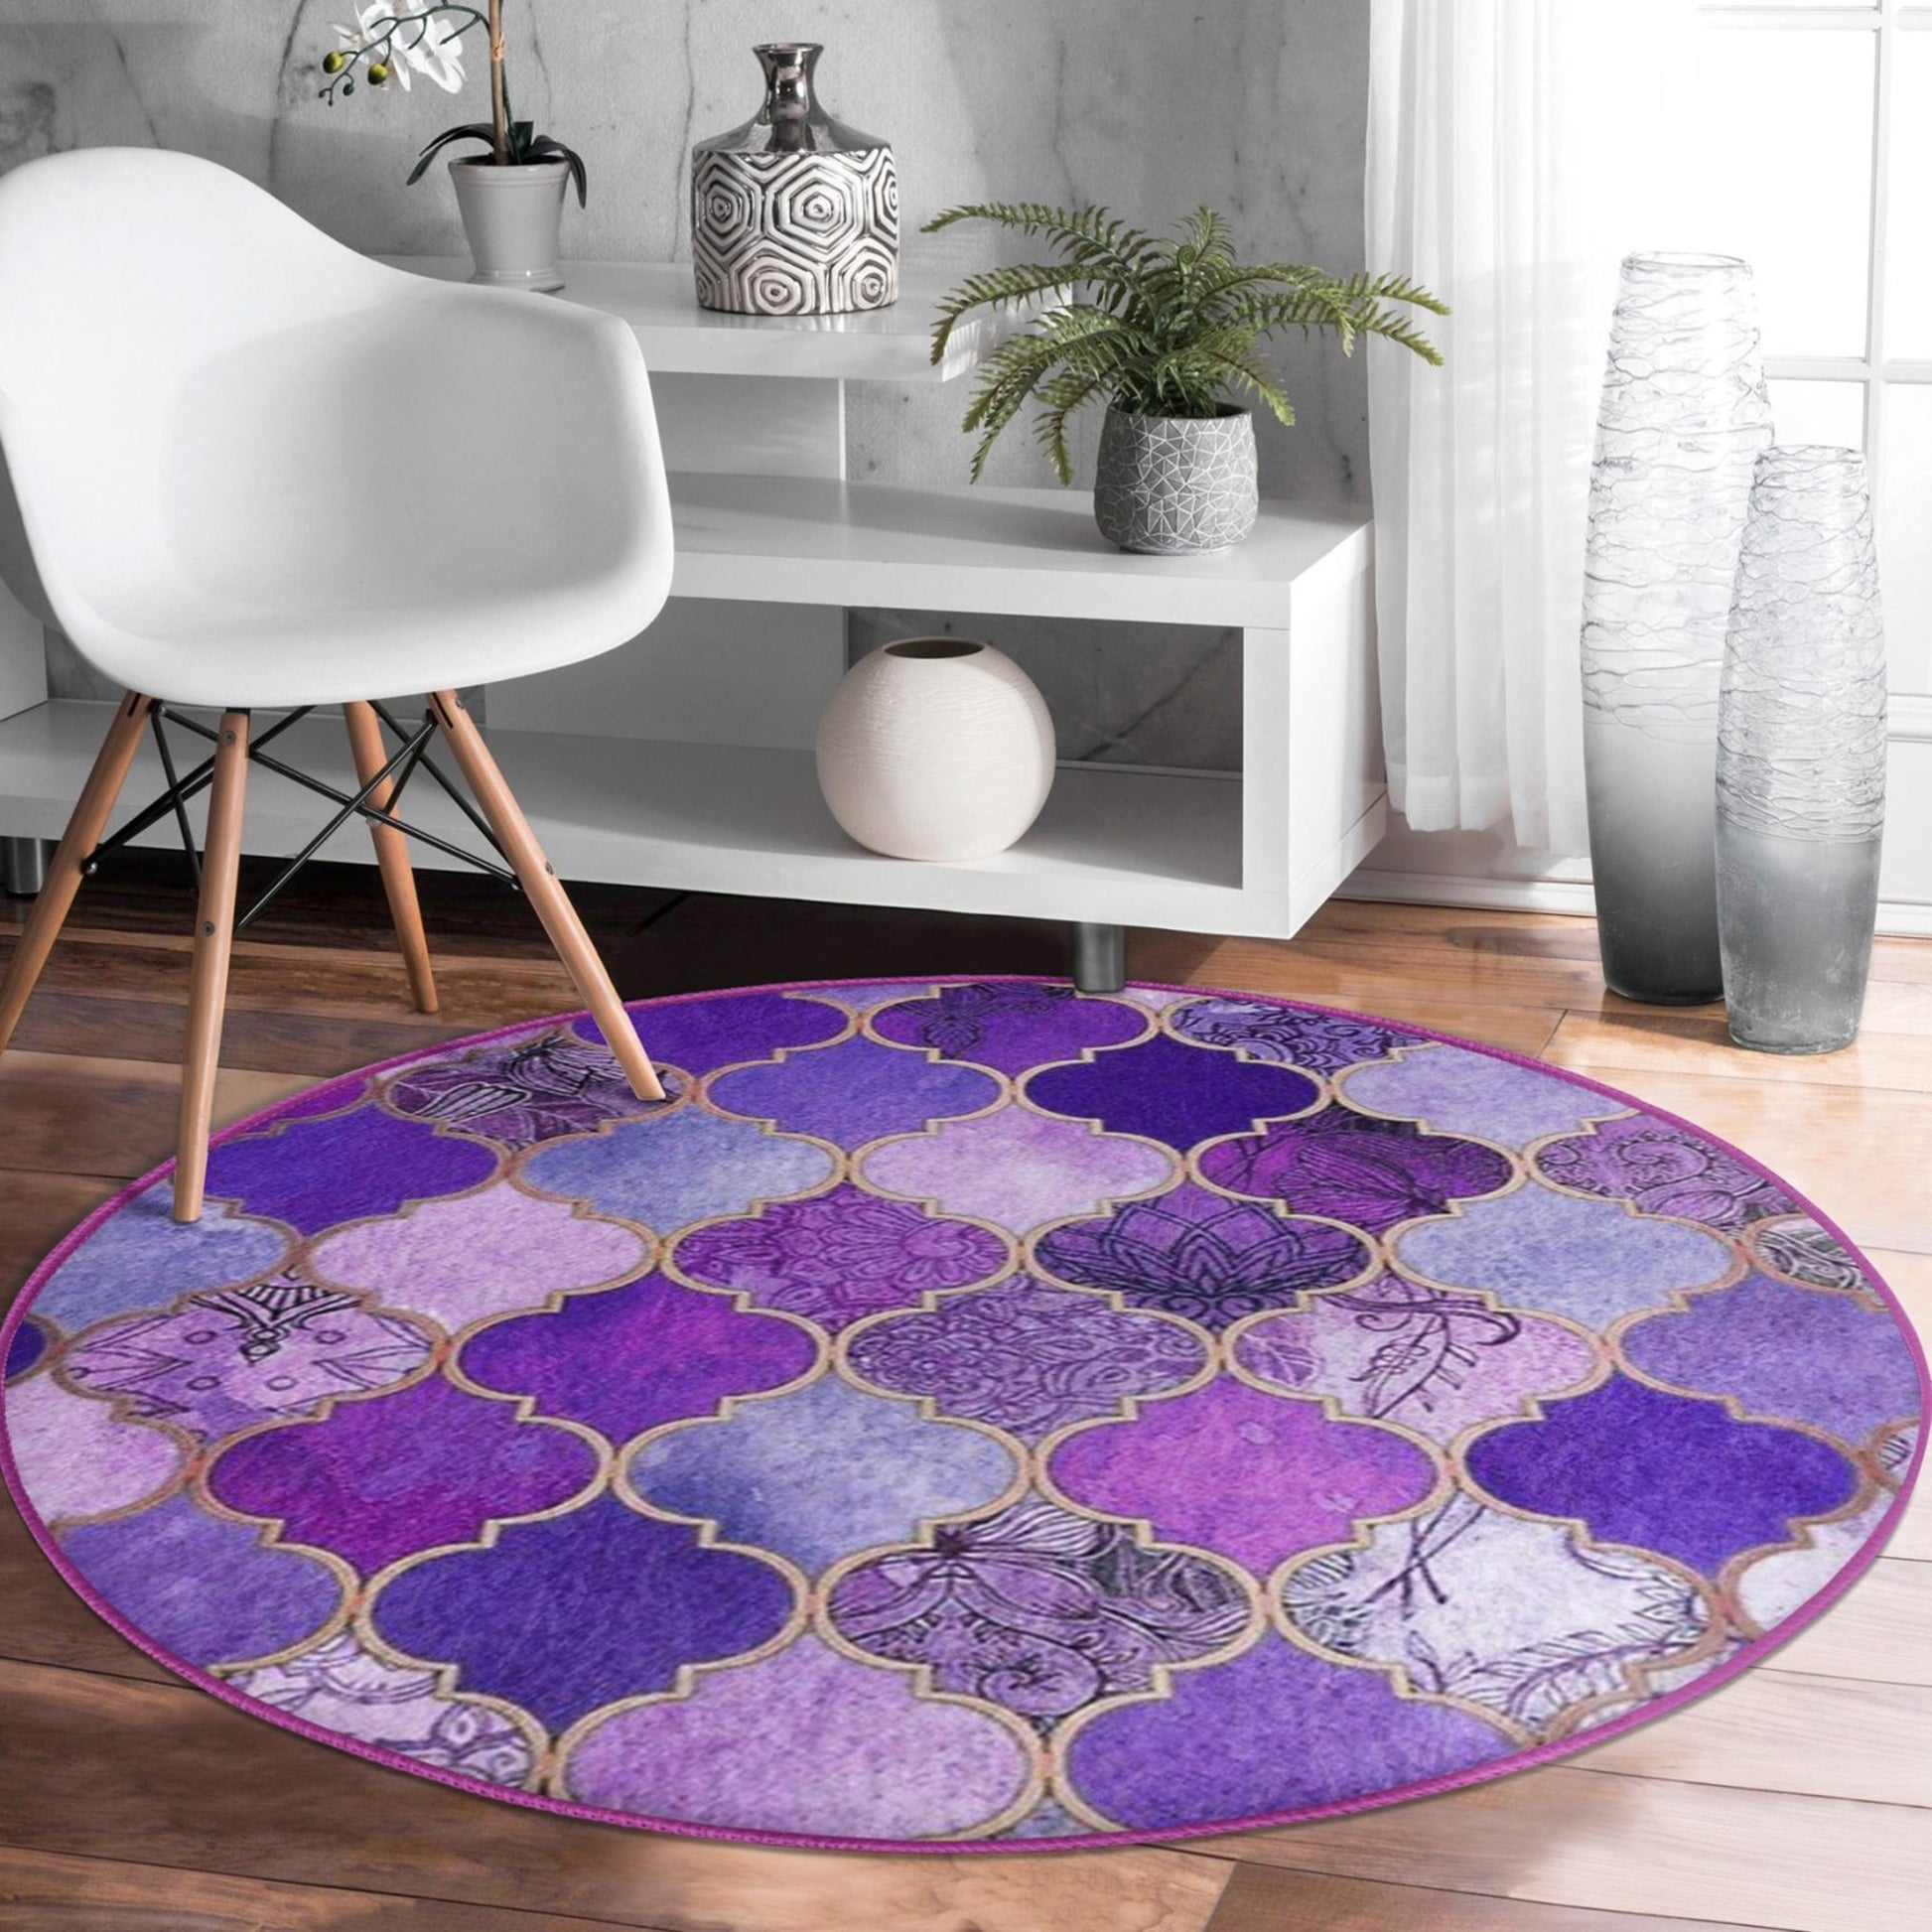 Intricate Purple Motifs Pattern Decorative Rug - Opulent Design